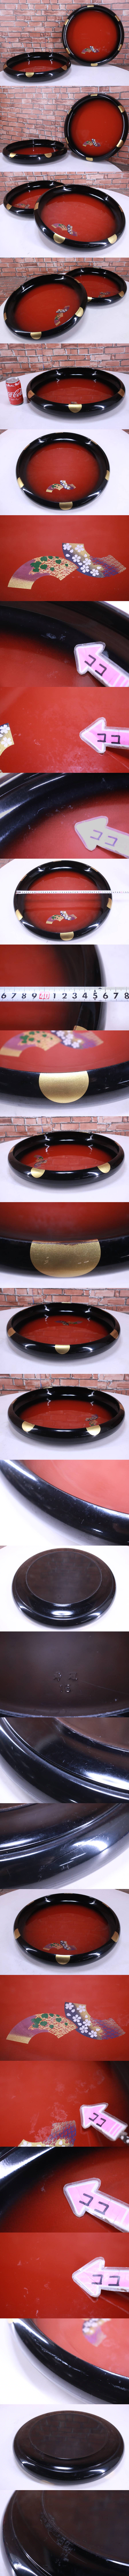 寿司桶2個セット寿冠15 中古現状品飲食店使用中古品寿冠寿司| JChere